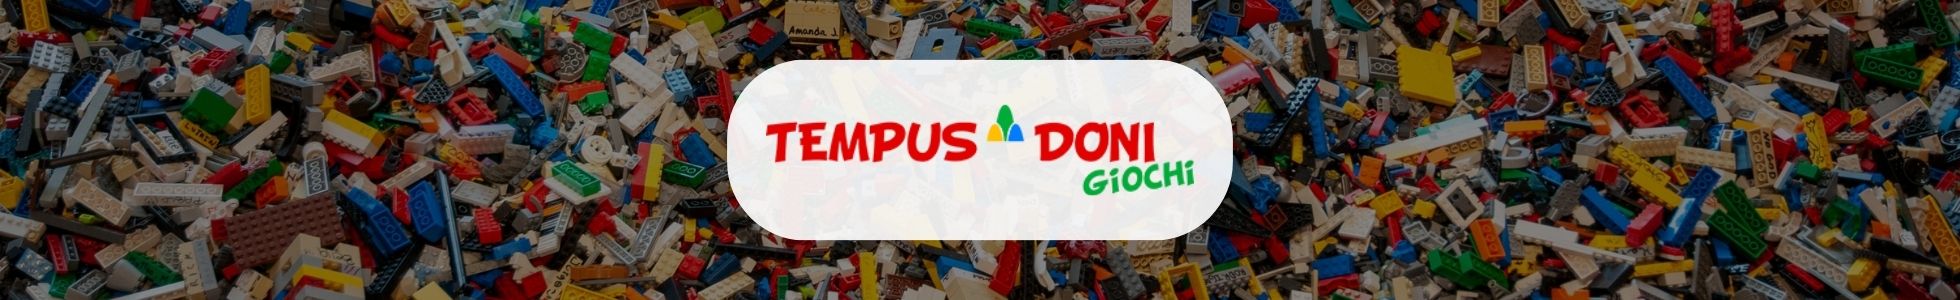 Tempus Doni Giochi - Shop online giocattoli